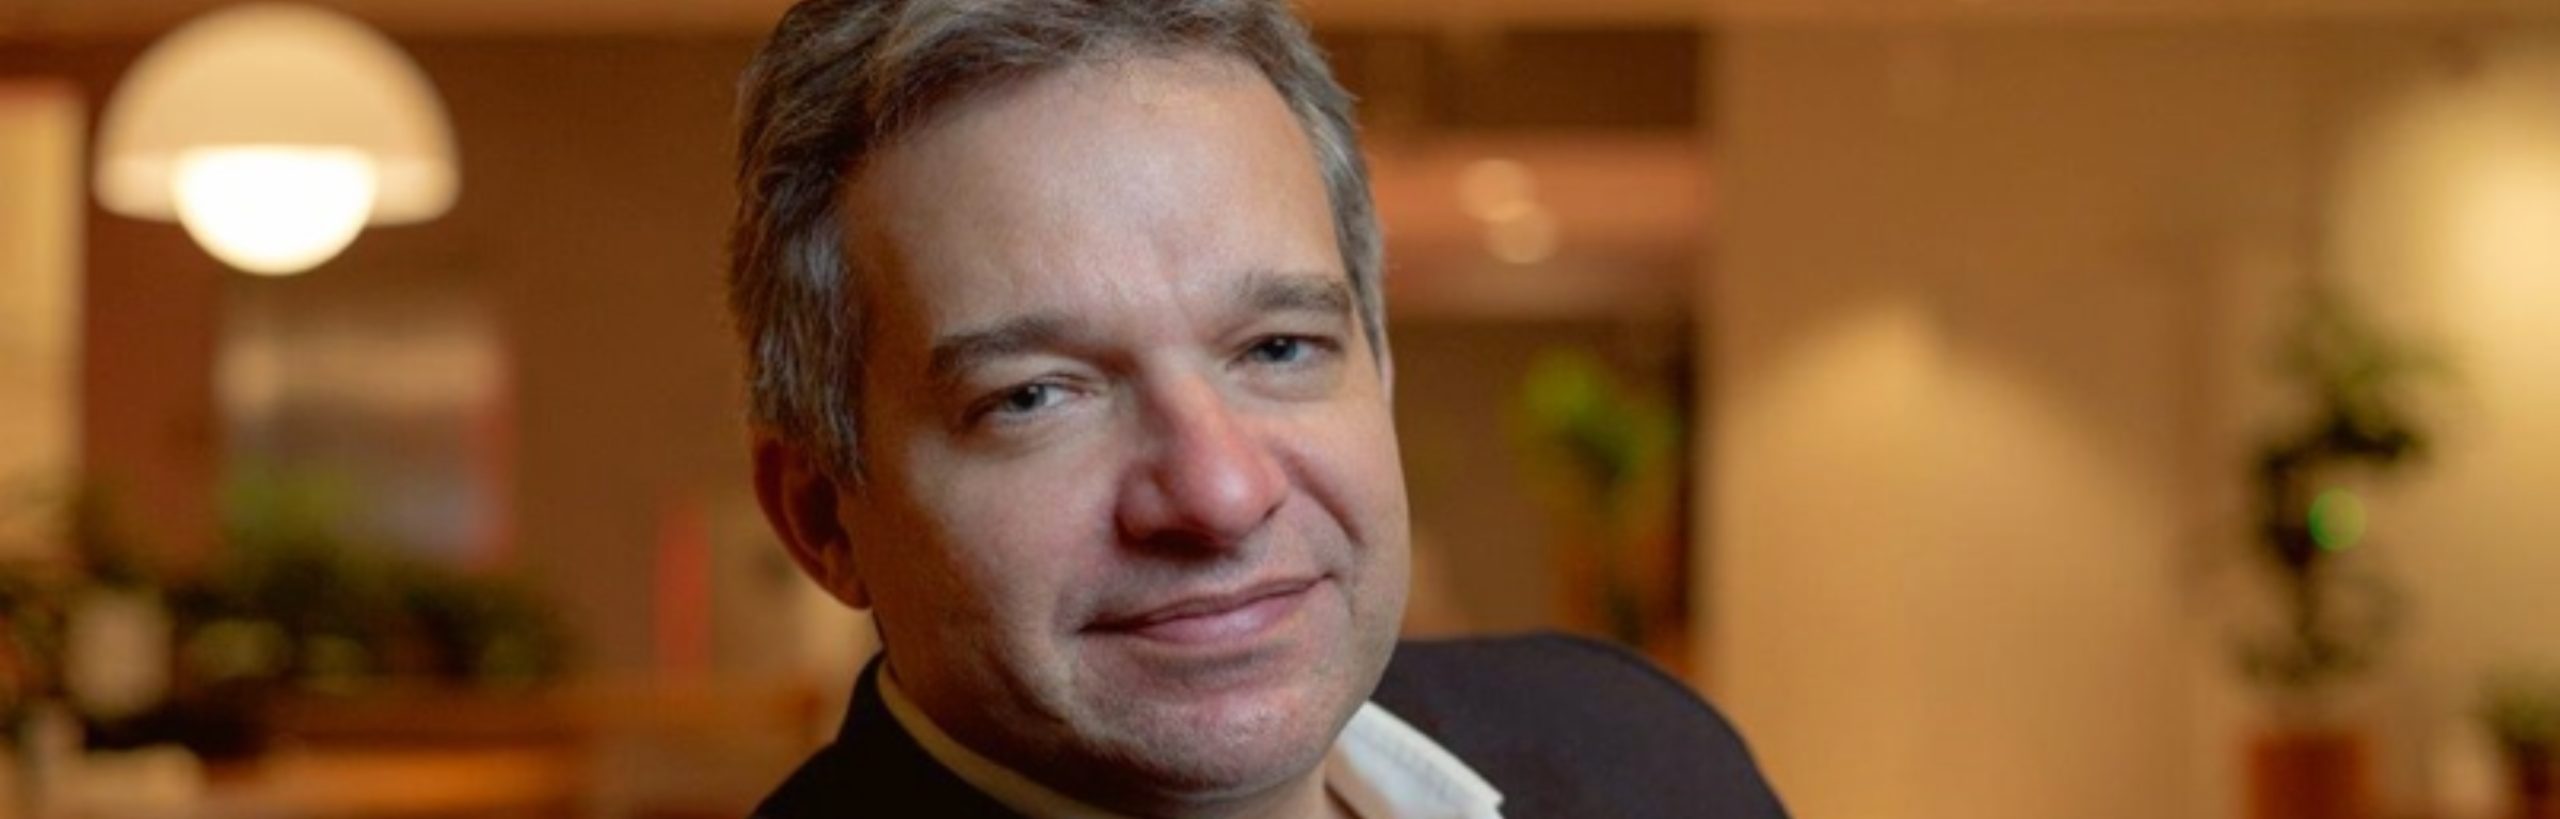 Gustavo Fonseca é o novo presidente da SKY Brasil